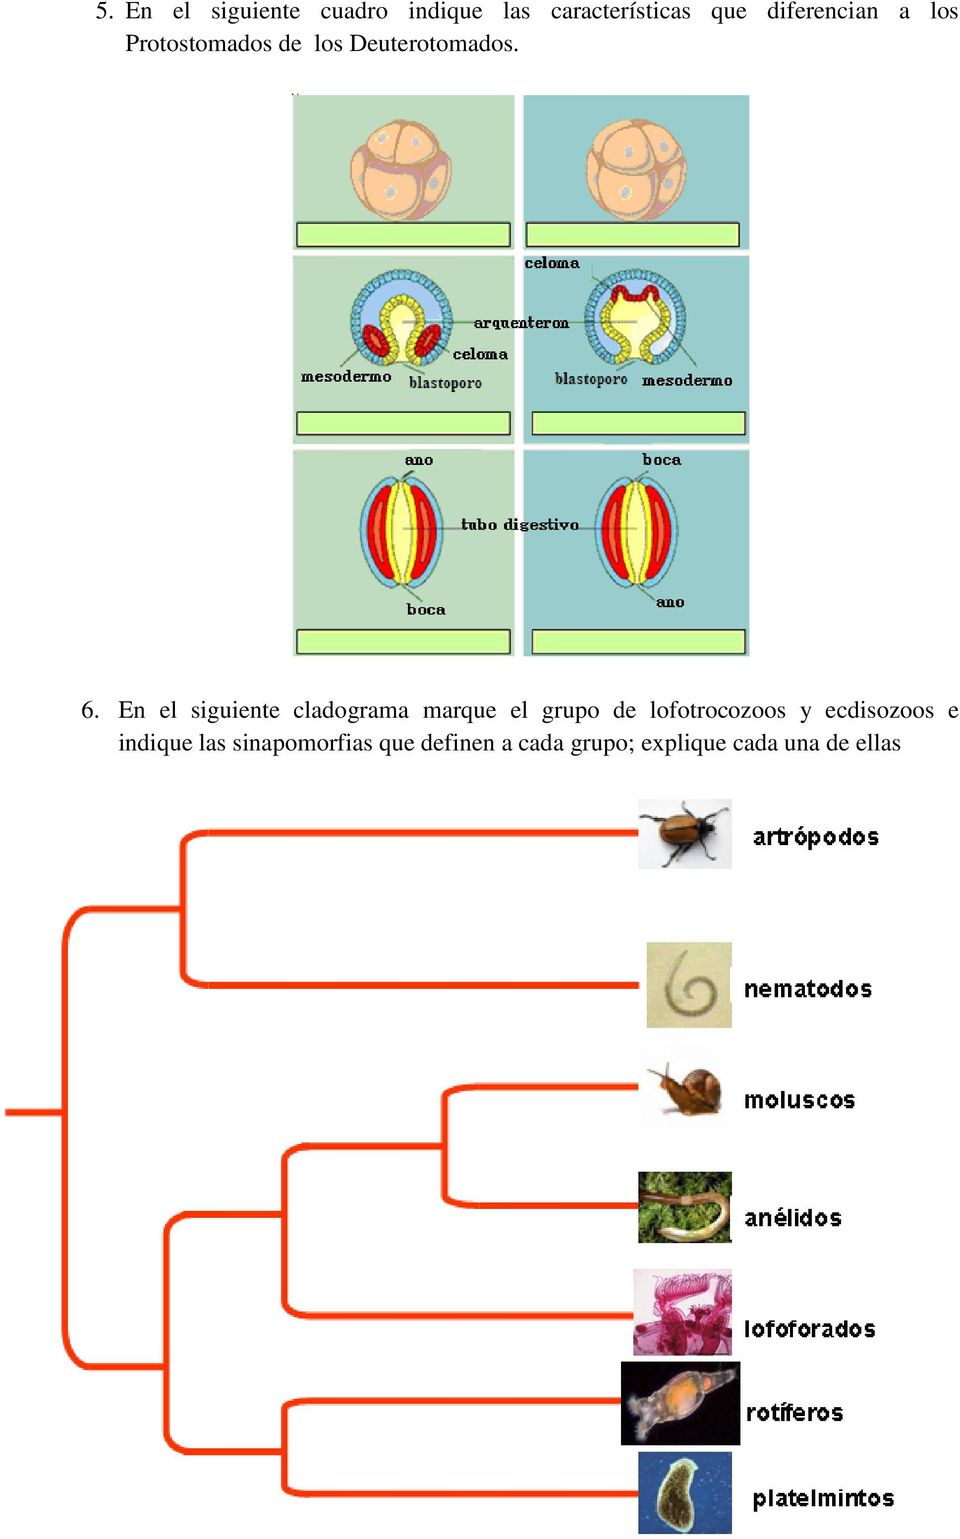 En el siguiente cladograma marque el grupo de lofotrocozoos y